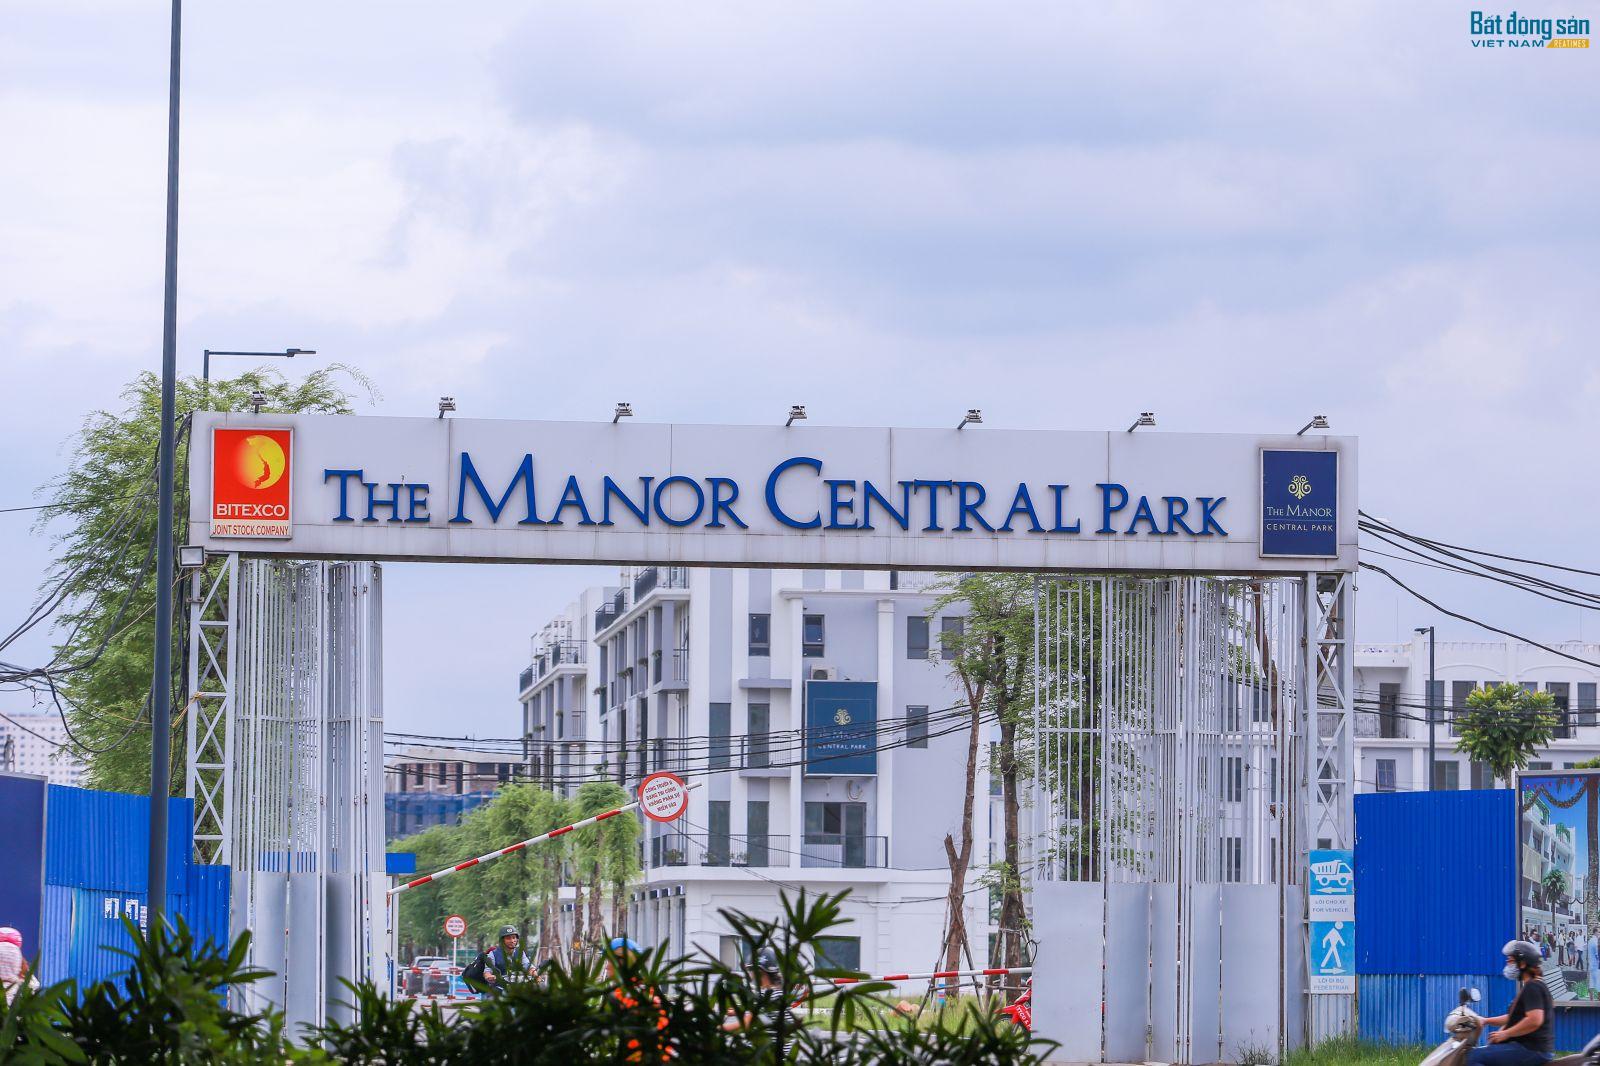 Tuyến đường BT bao quanh khu tưởng niệm Chu Văn An chưa biết đến khi nào mới xong nhưng khu biệt thự liền kề, nhà thấp tầng thuộc khu đô thị The Manor Central Park ở phần đất đối ứng của Bitexco đã cơ bản hoàn thành và được quảng cáo rao bán rất rầm rộ